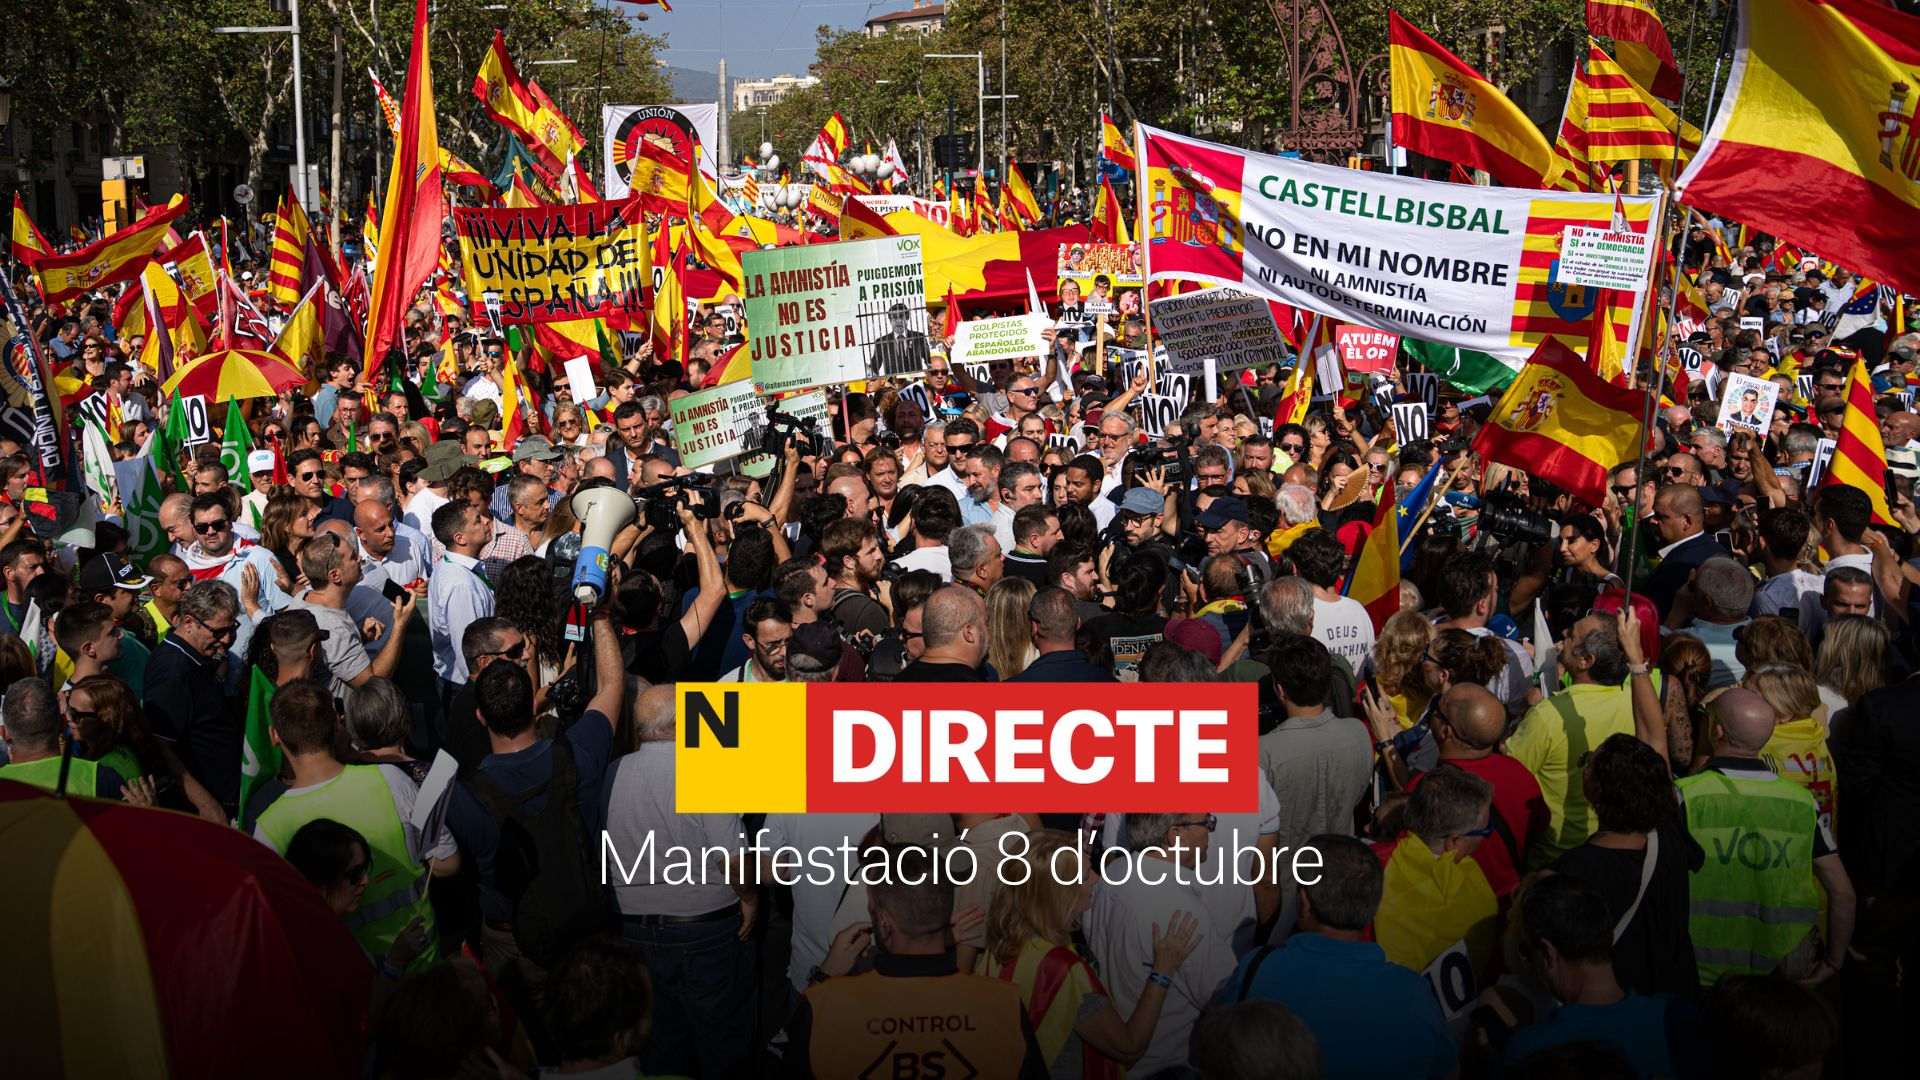 Manifestació del 8 d'octubre contra l'amnistia a Barcelona, DIRECTE | Última hora, discursos i reaccions